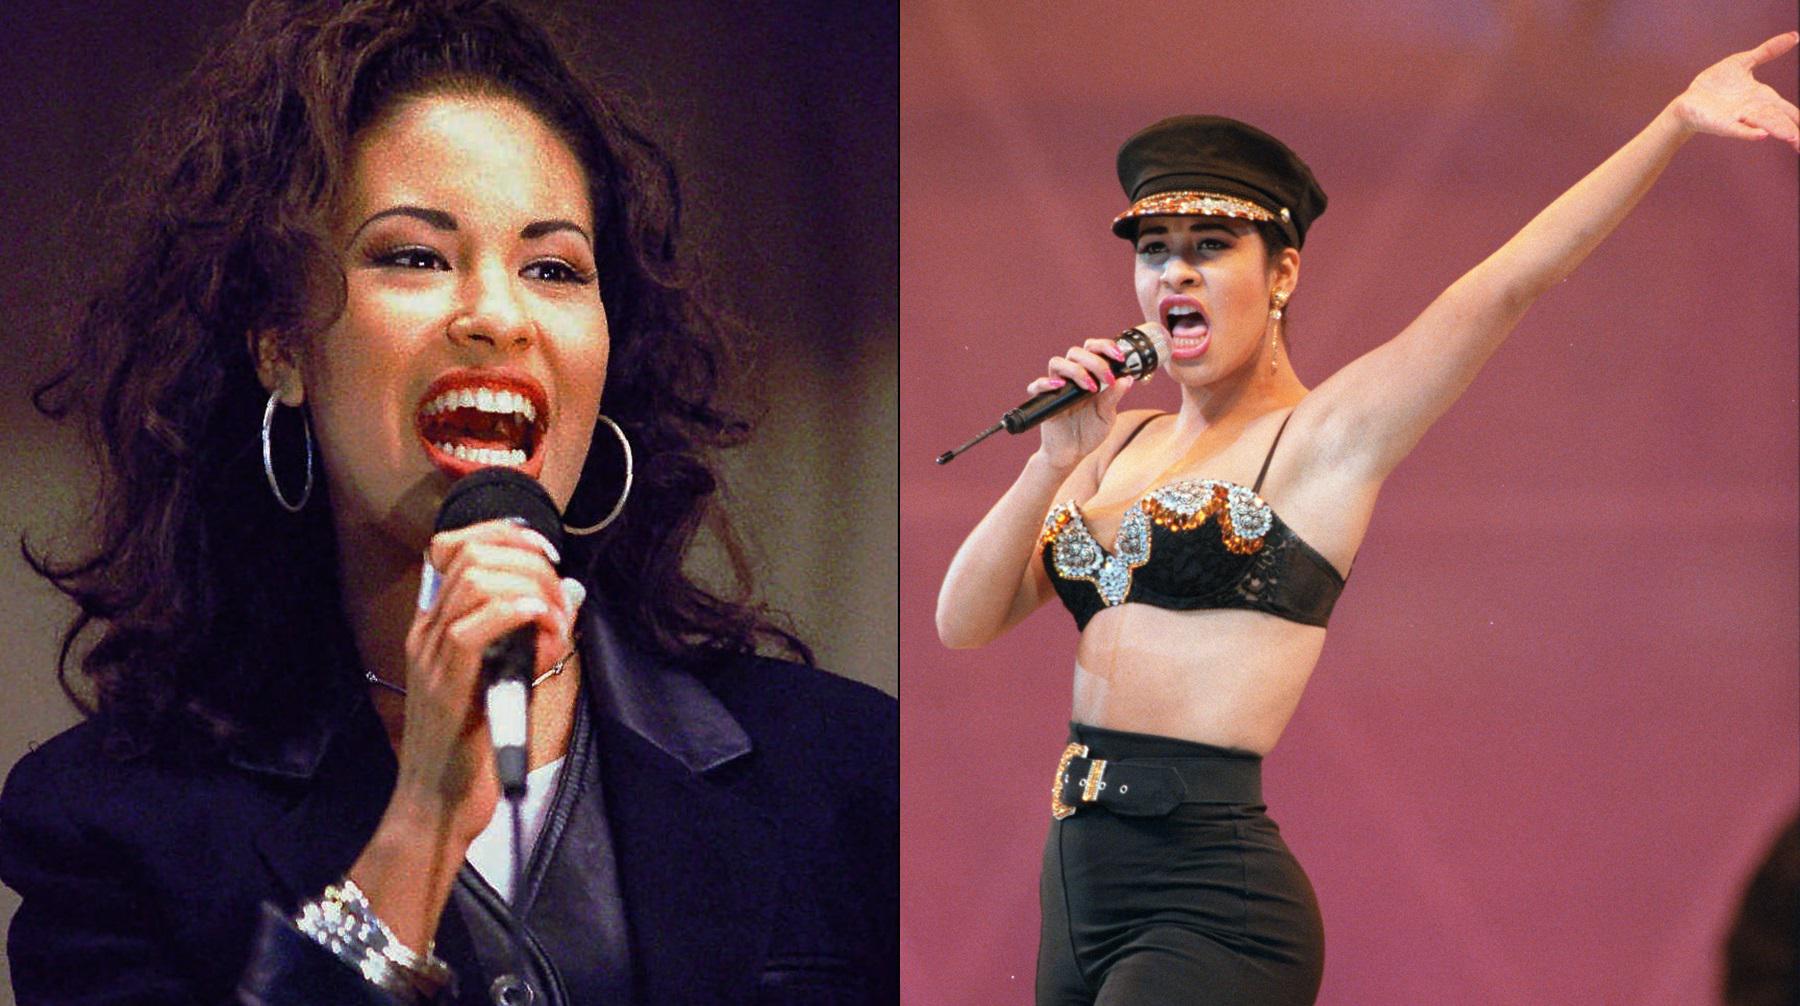 Se viralizan fotos inéditas de Selena Quintanilla durante show de 1993